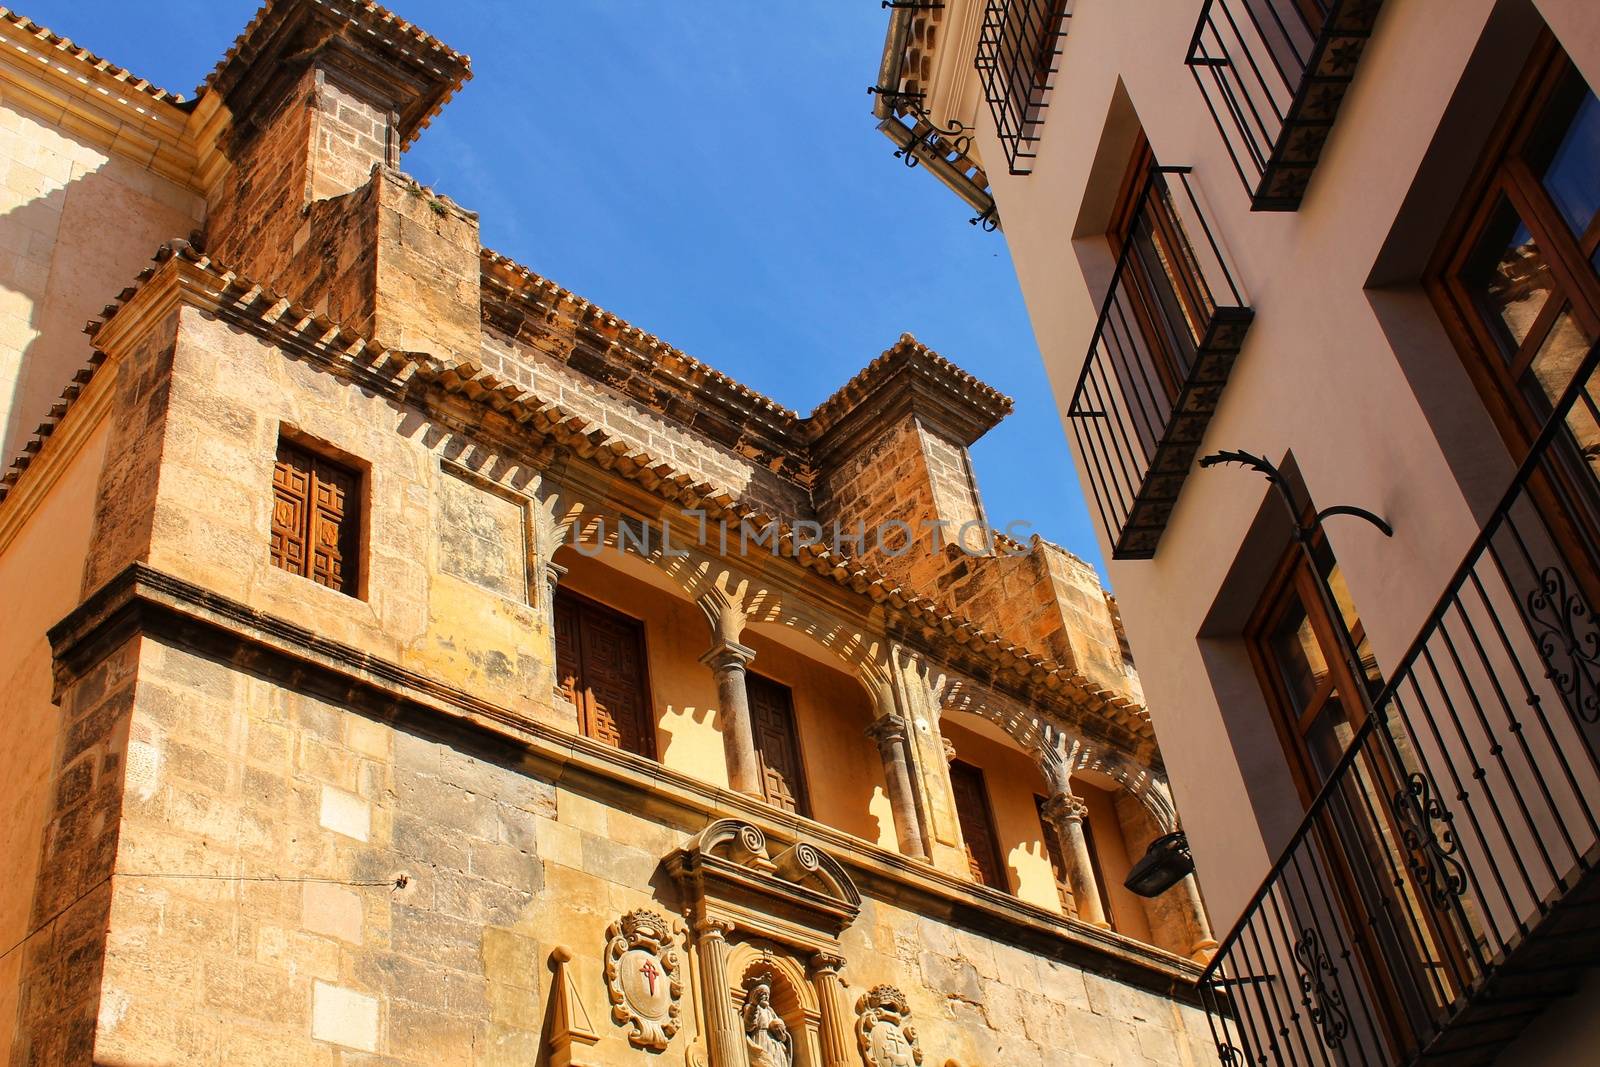 El Salvador church and old facade in Caravaca de la Cruz, Murcia by soniabonet